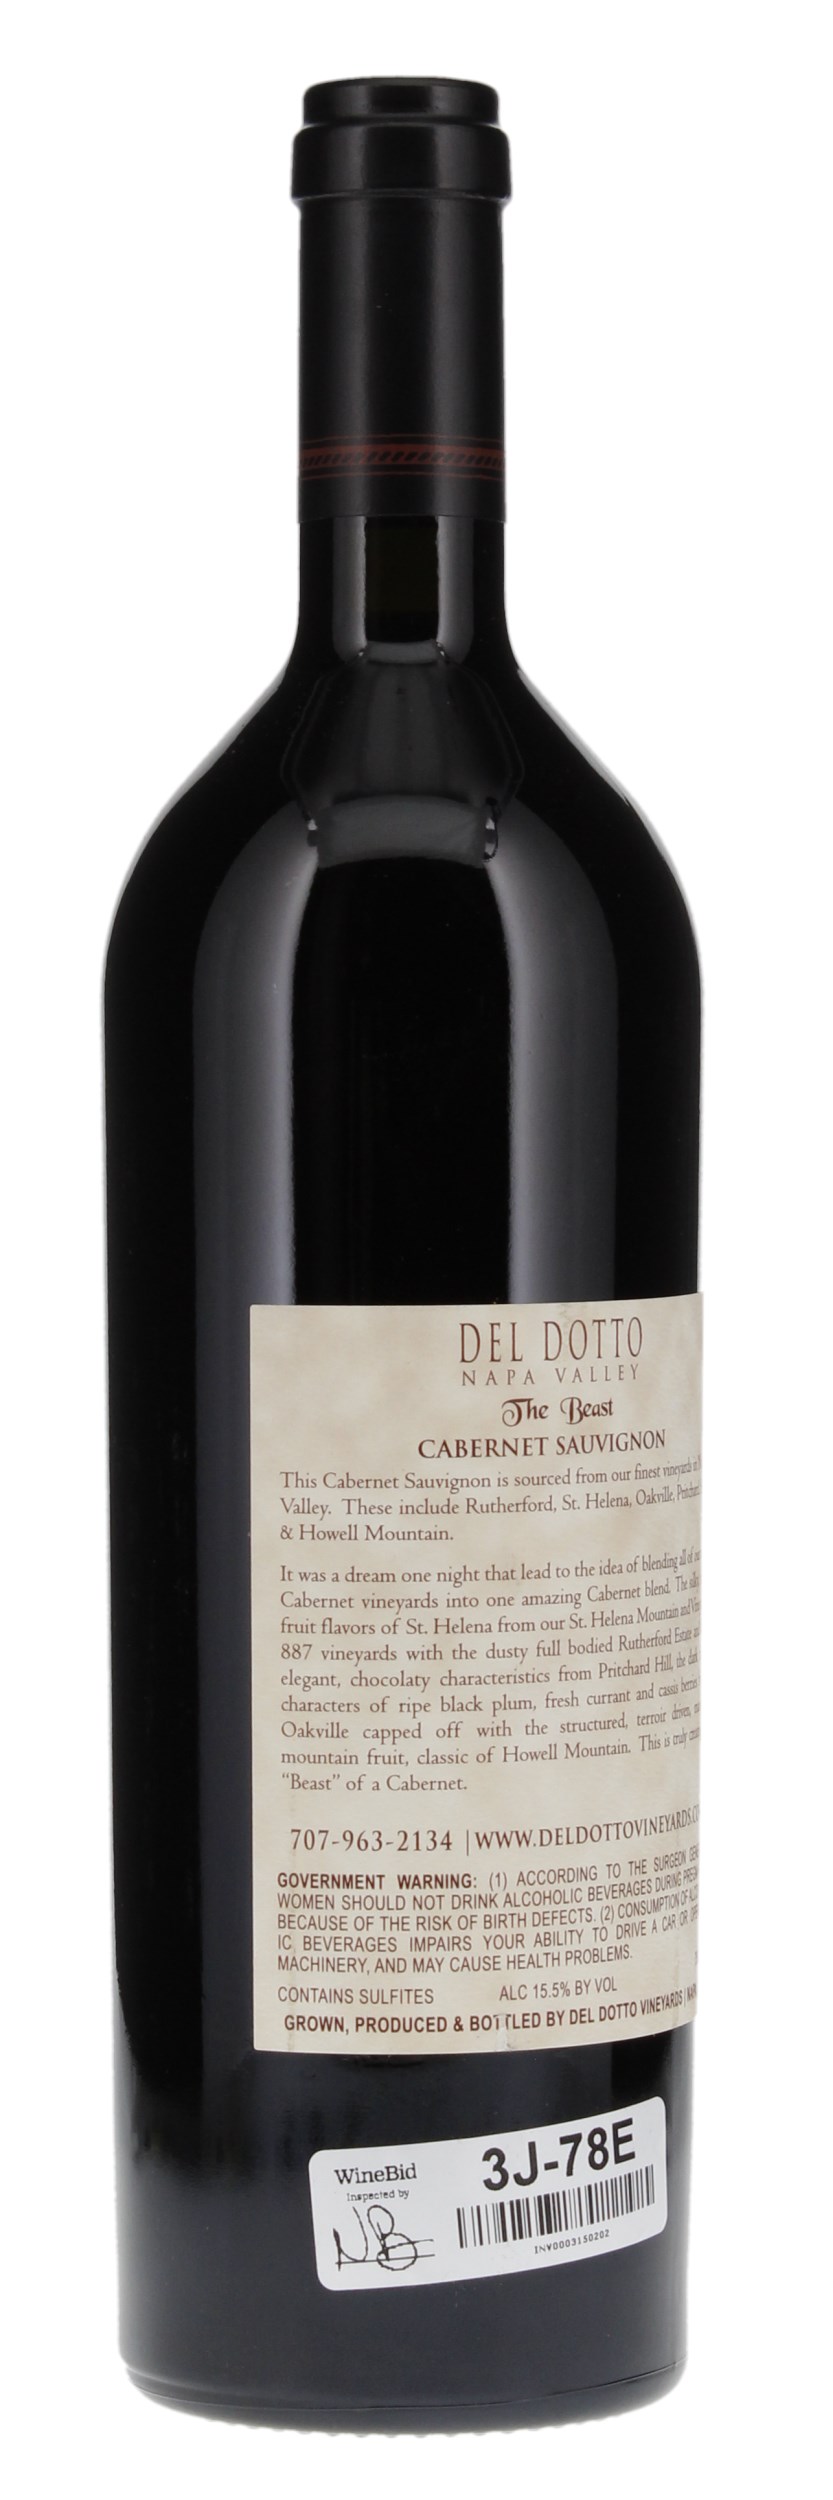 2014 Del Dotto The Beast Cabernet Sauvignon, 750ml